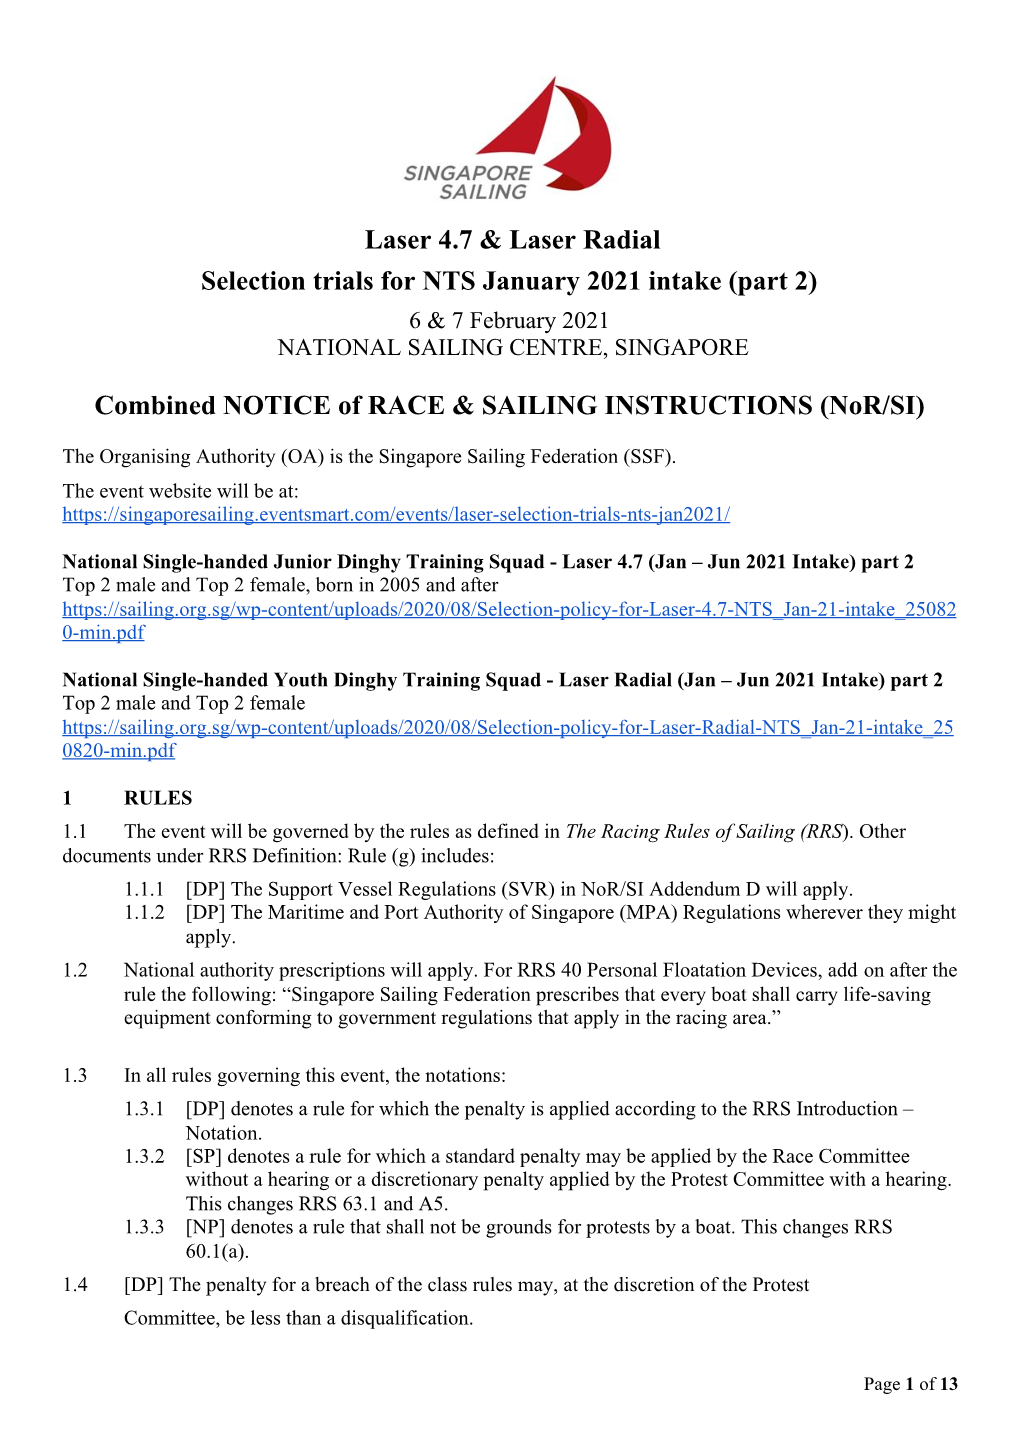 Laser 4.7 & Laser Radial Selection Trials For